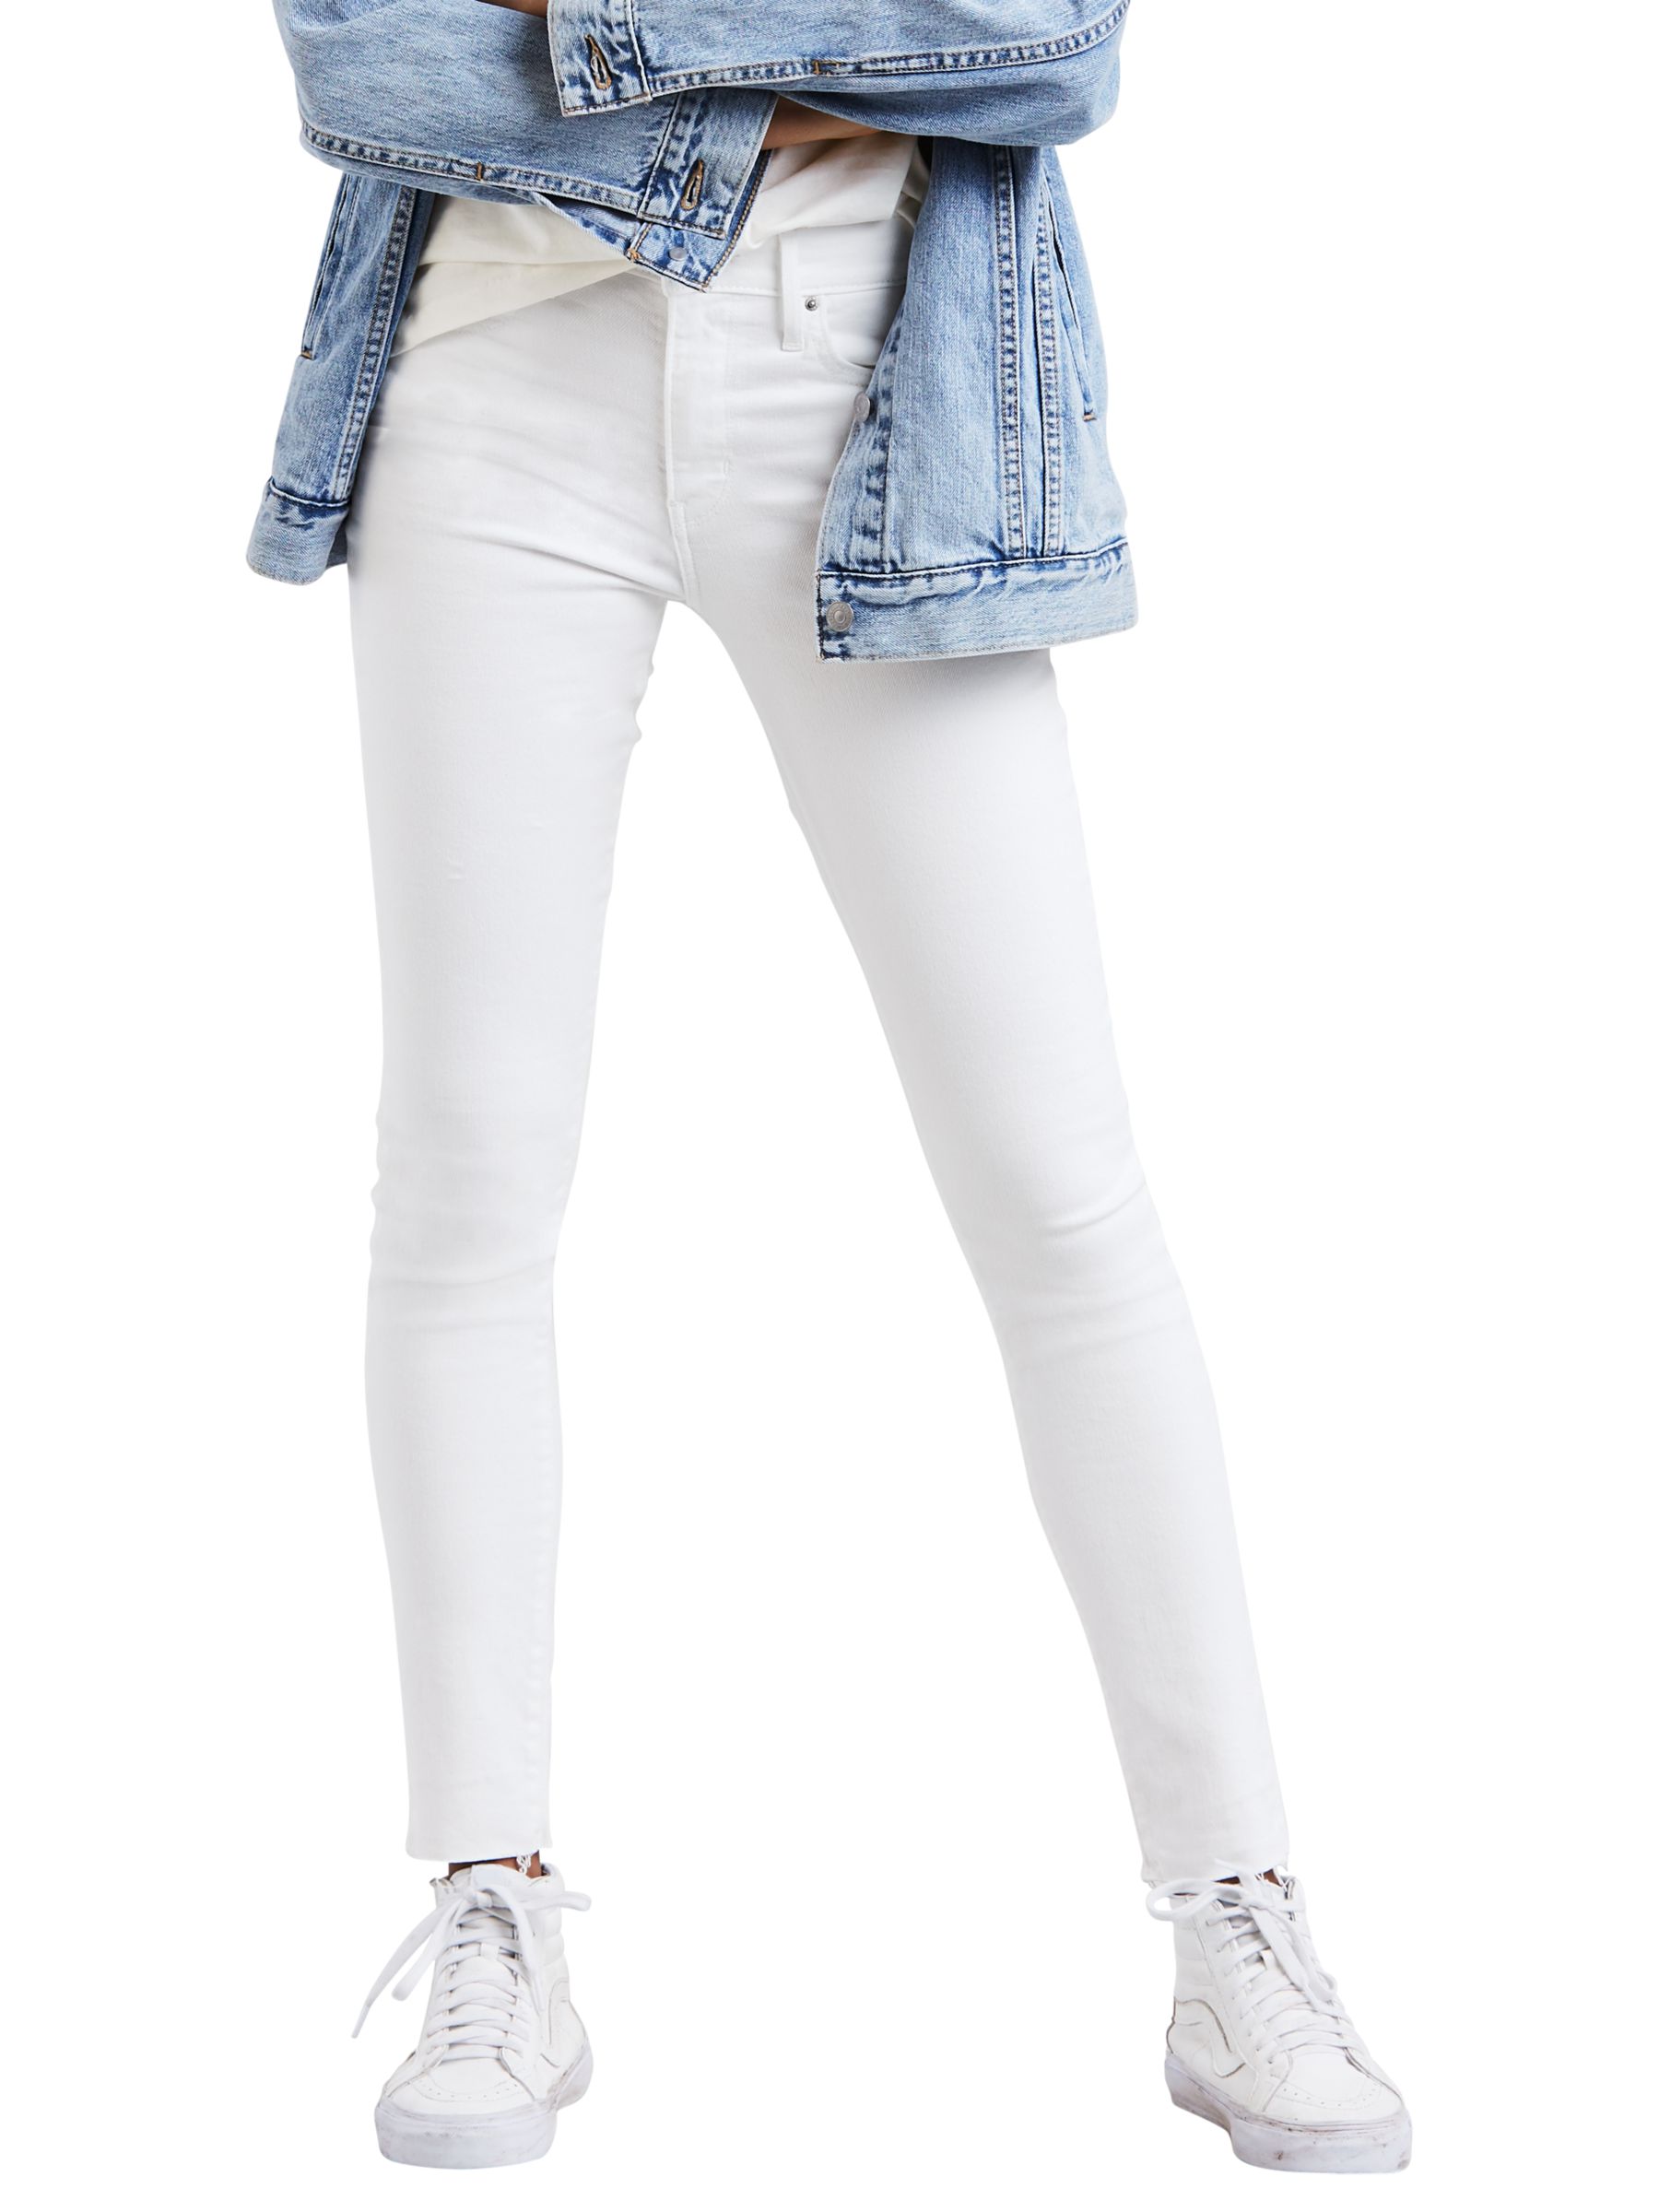 levis white women's jeans